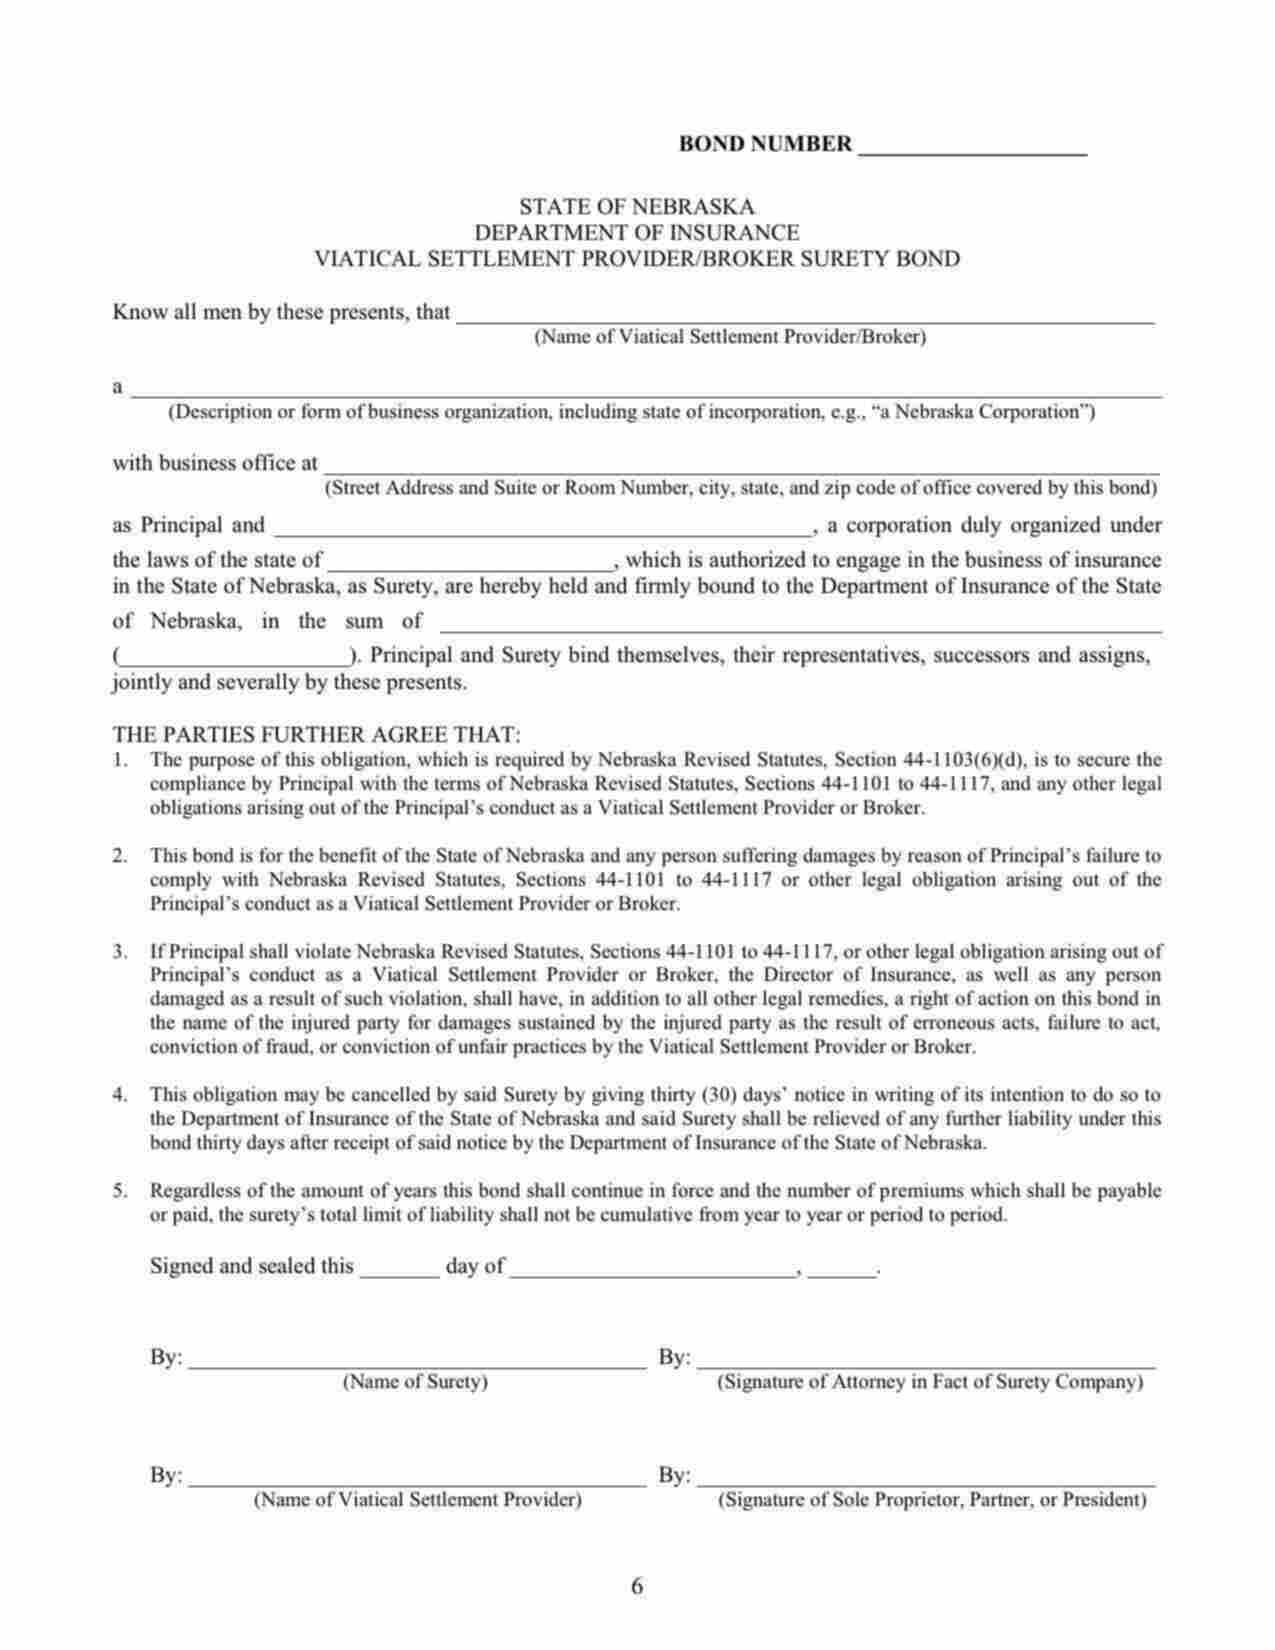 Nebraska Viatical Settlement Provider/Broker Bond Form